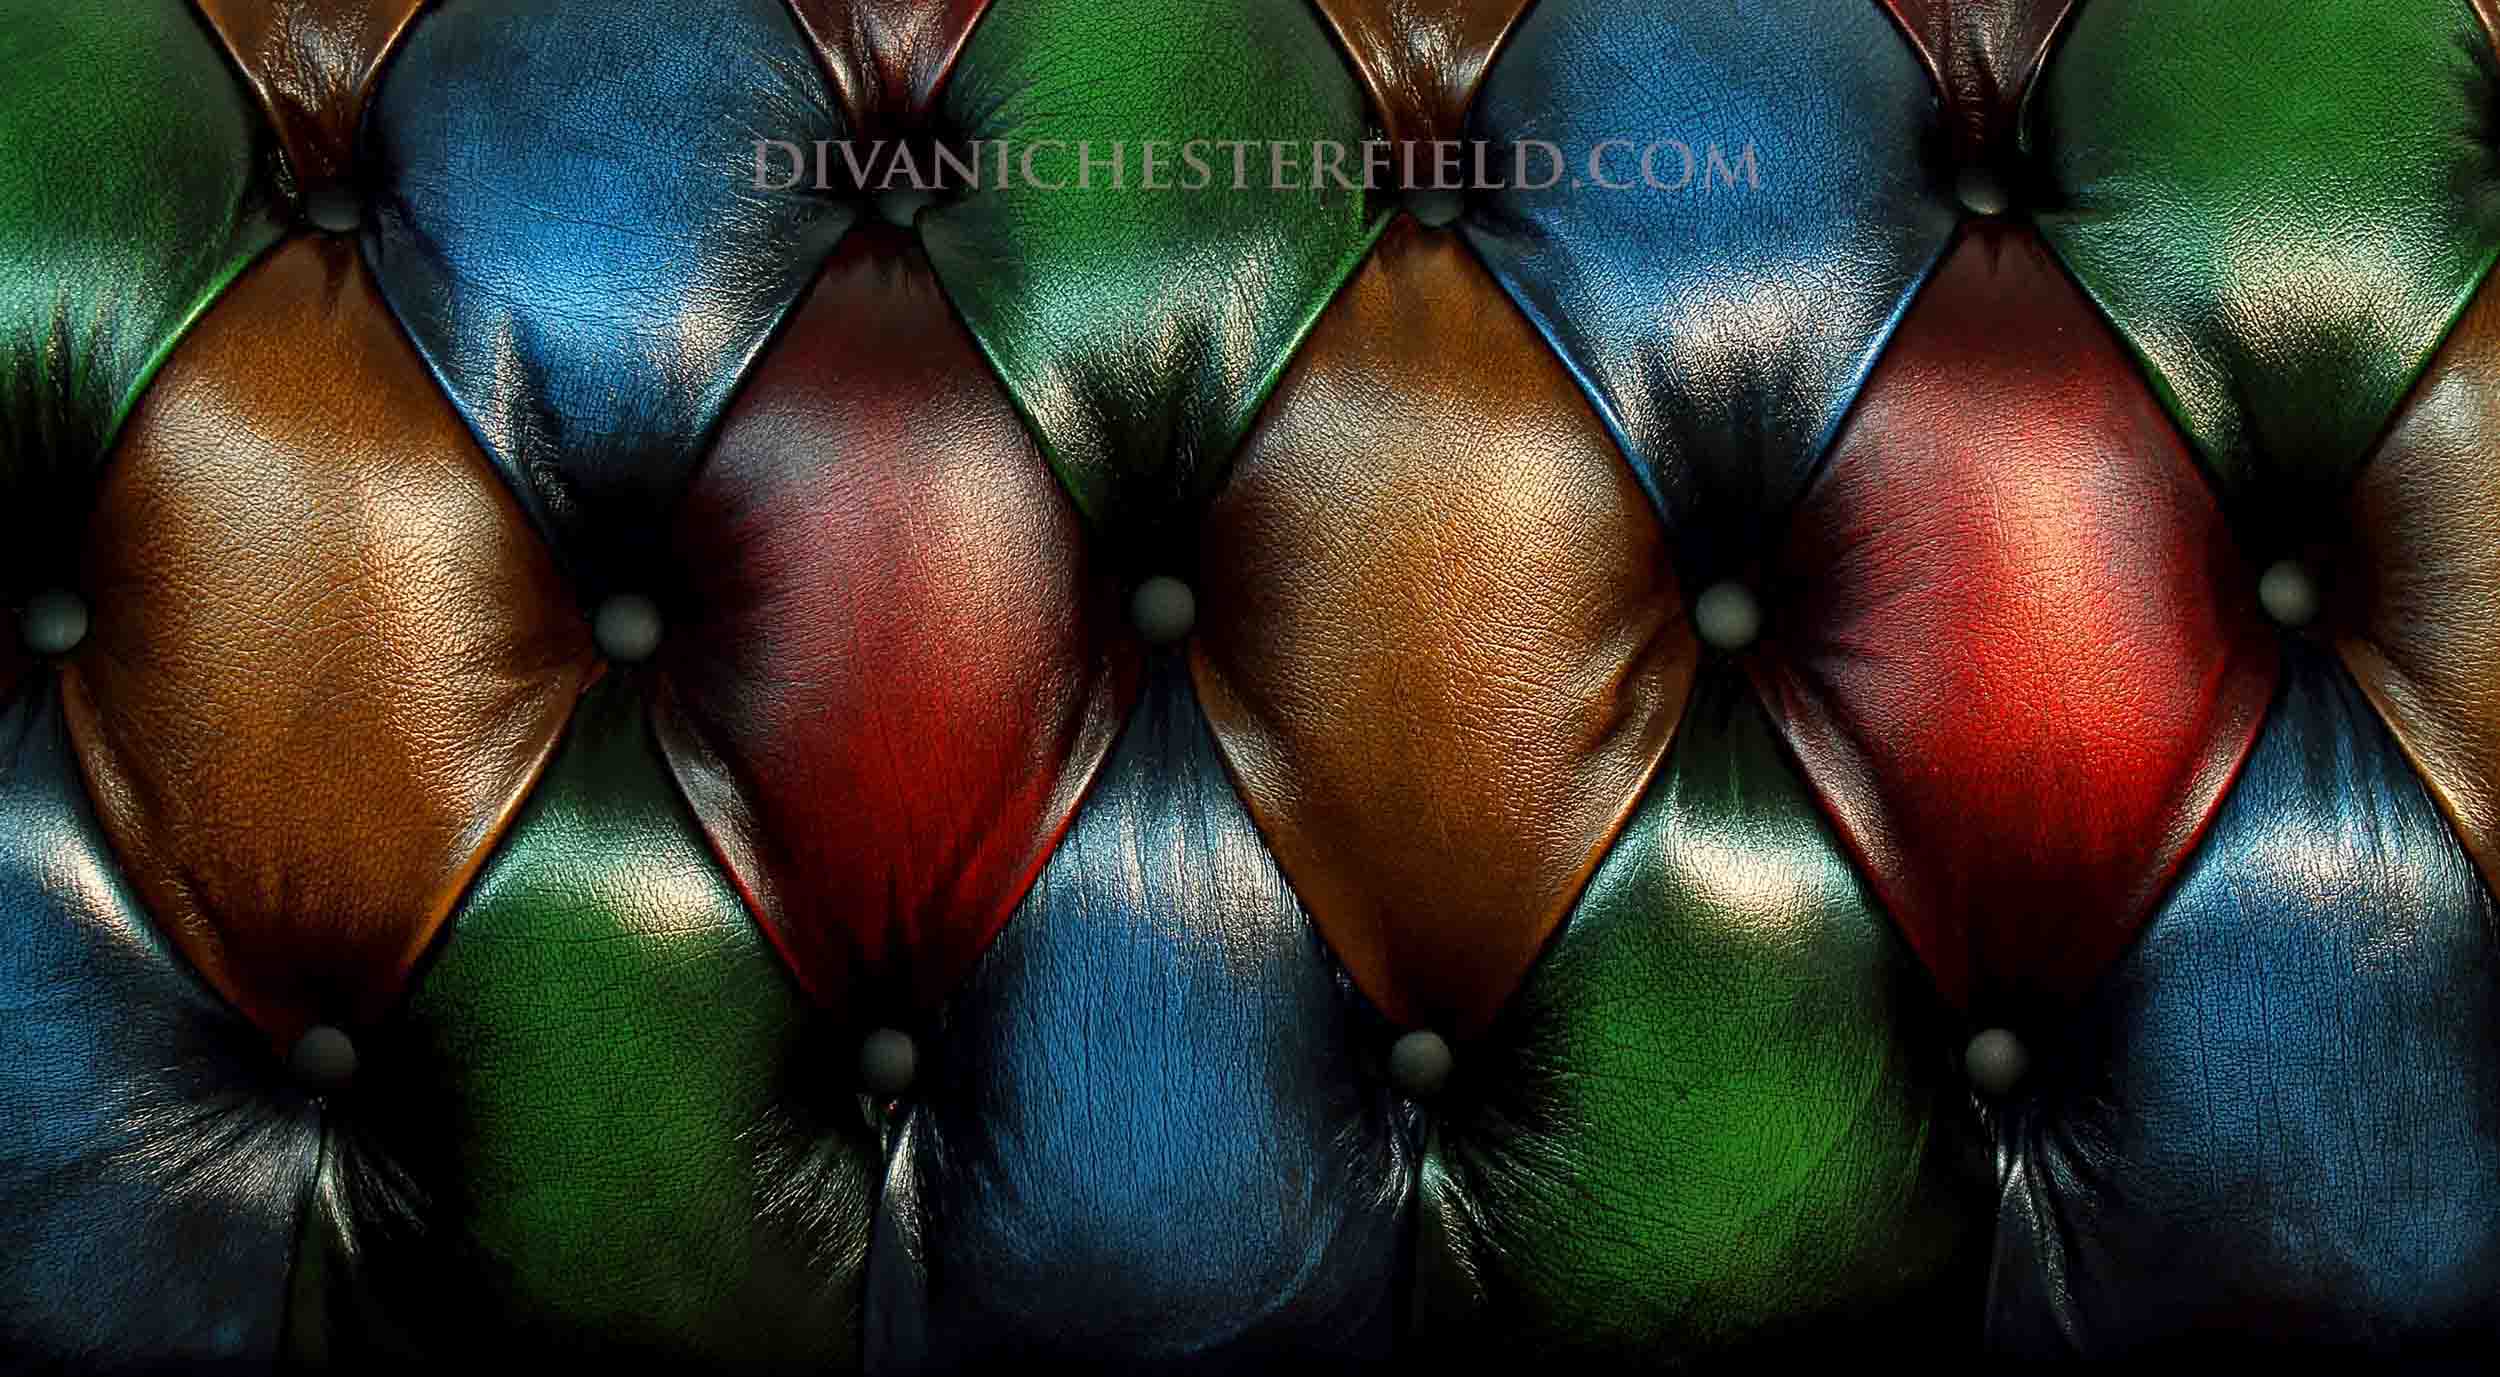 divano chester colorato pelle patchwork moderno harleq